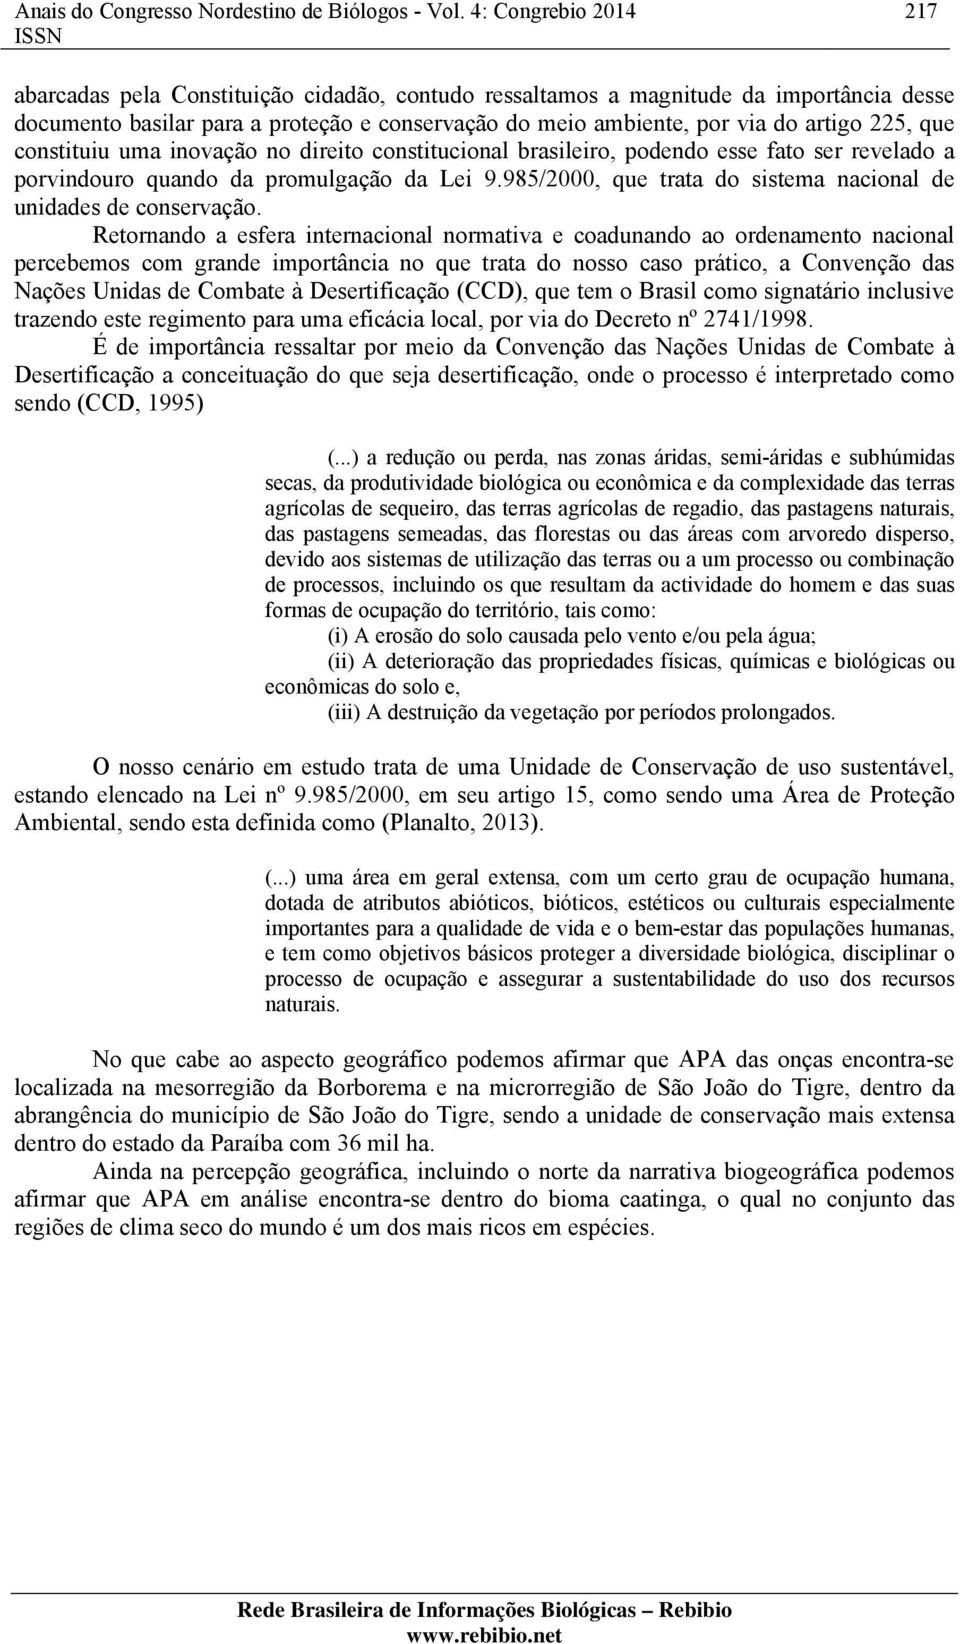 225, que constituiu uma inovação no direito constitucional brasileiro, podendo esse fato ser revelado a porvindouro quando da promulgação da Lei 9.